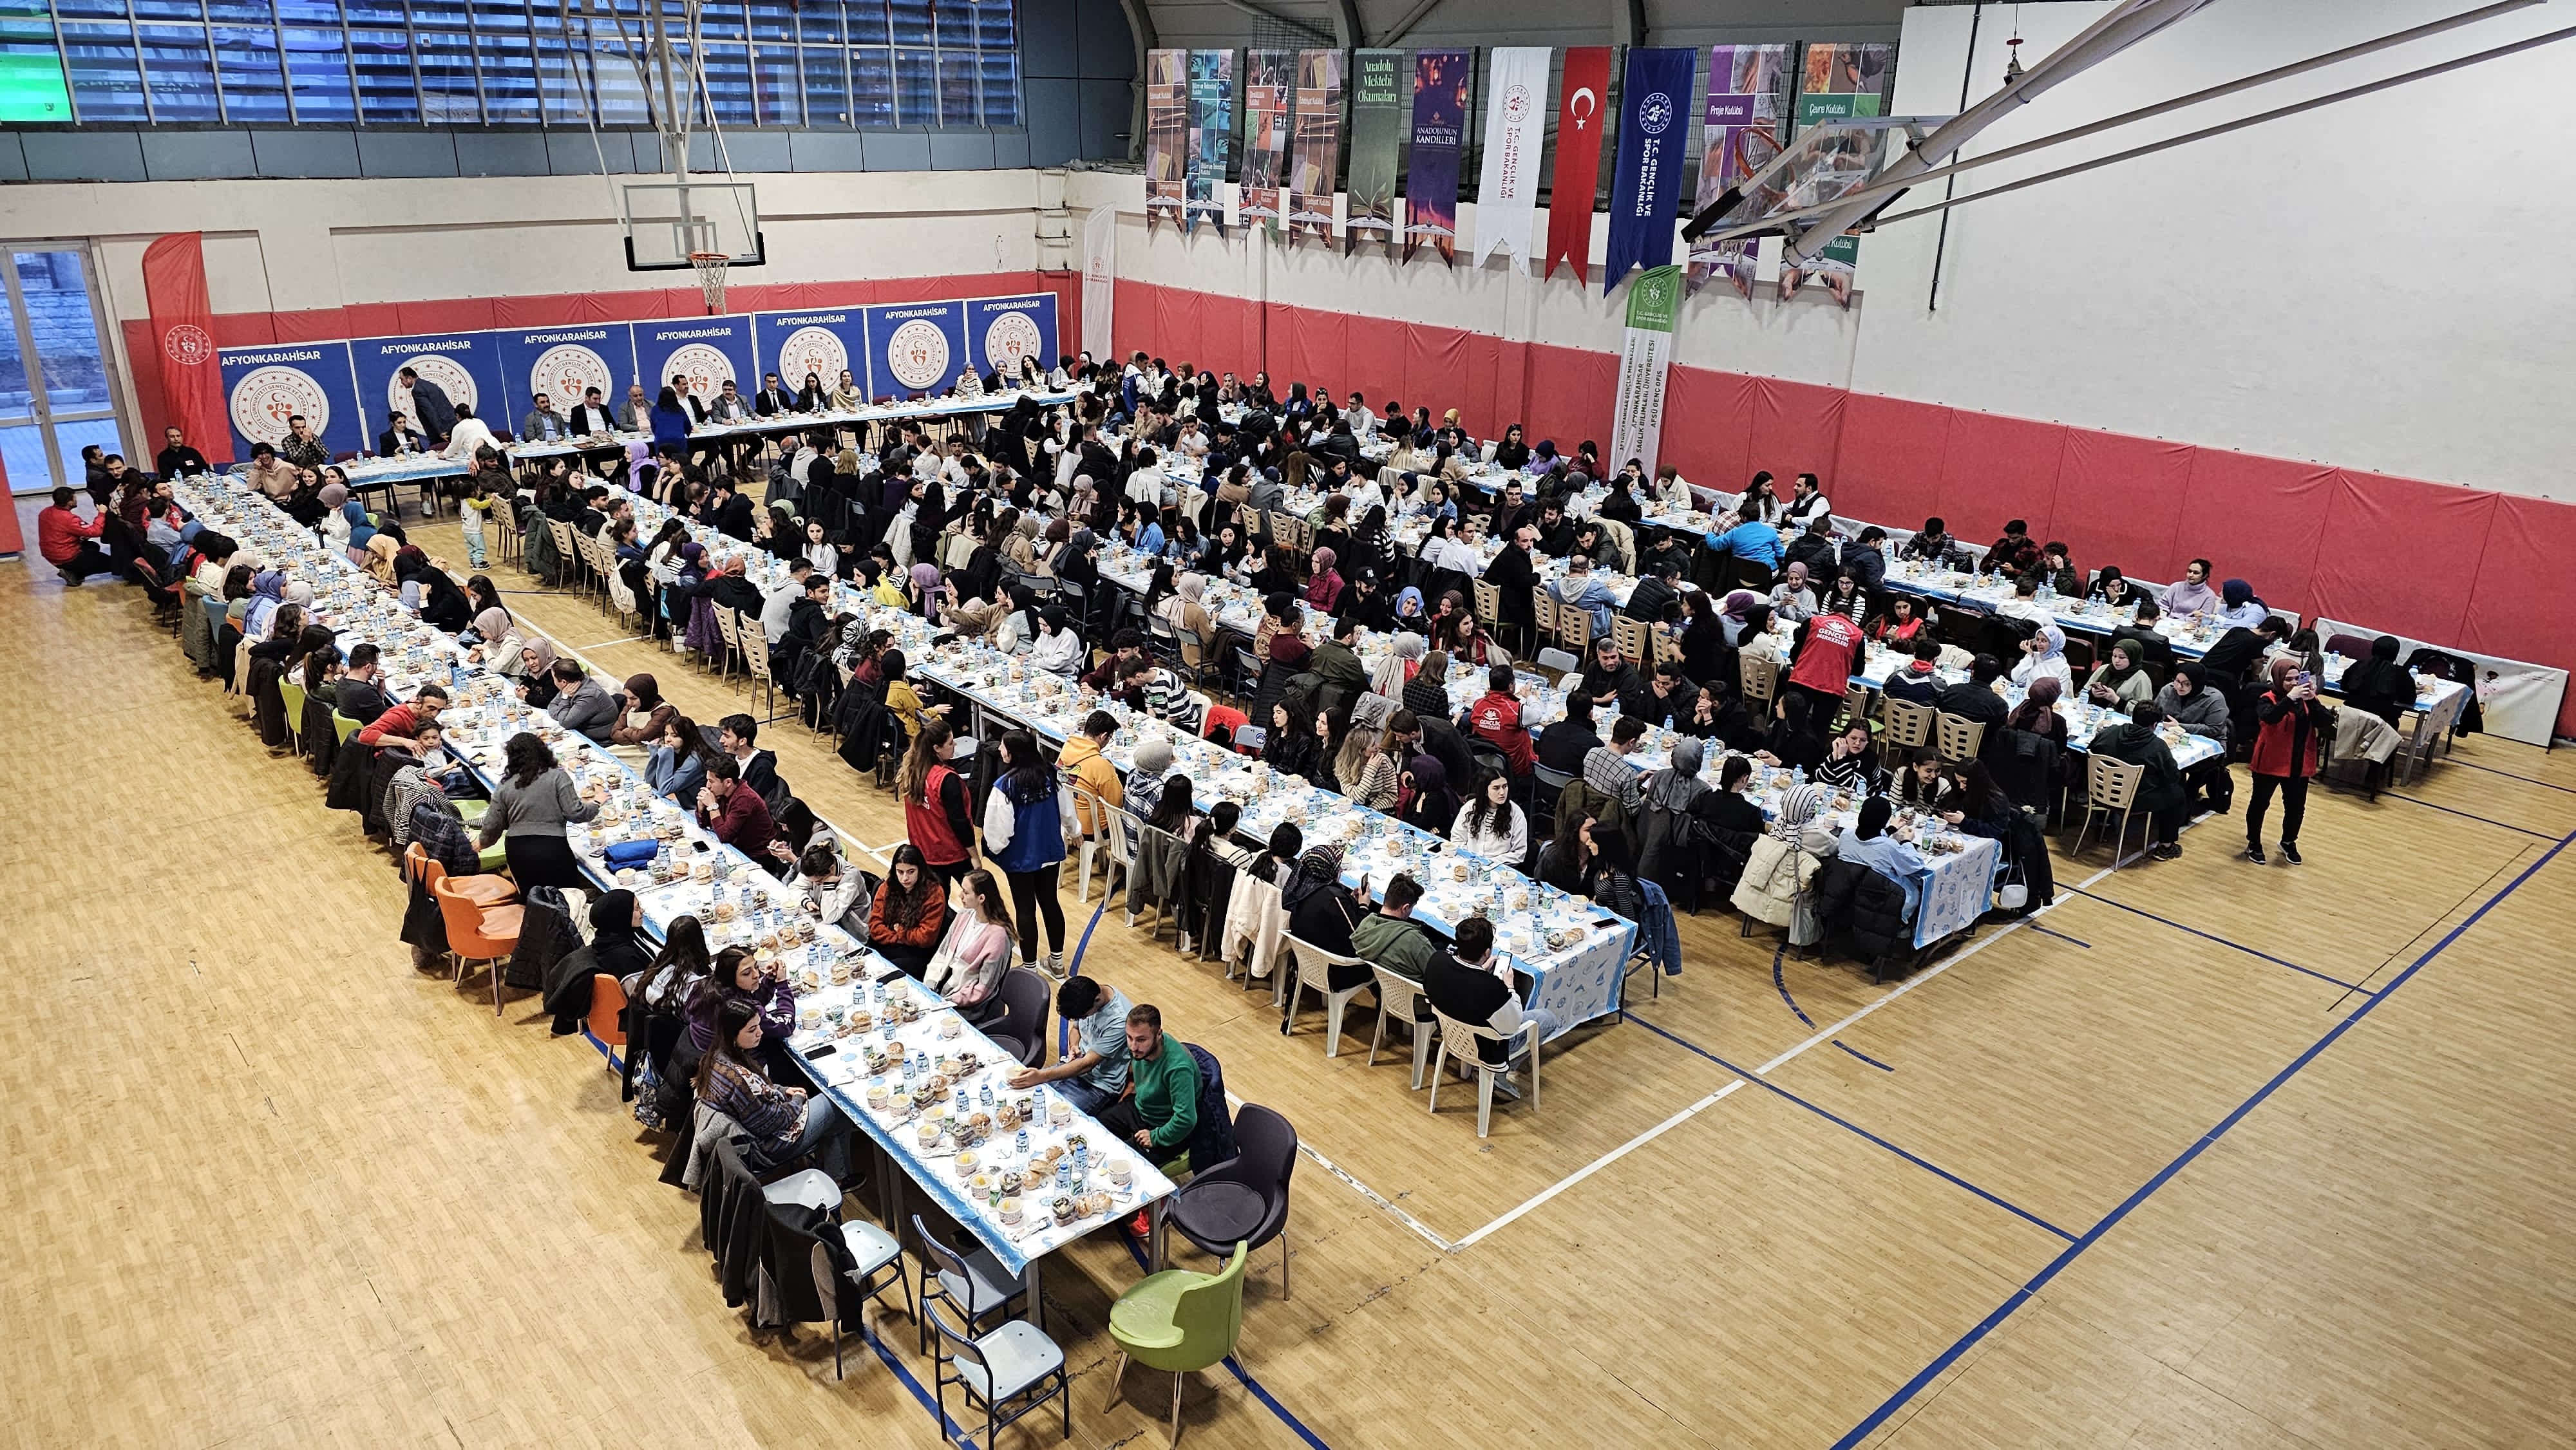 Afyonkarahisar Gençlik Merkezinde 400 kişinin katılımıyla iftar programı düzenlendi